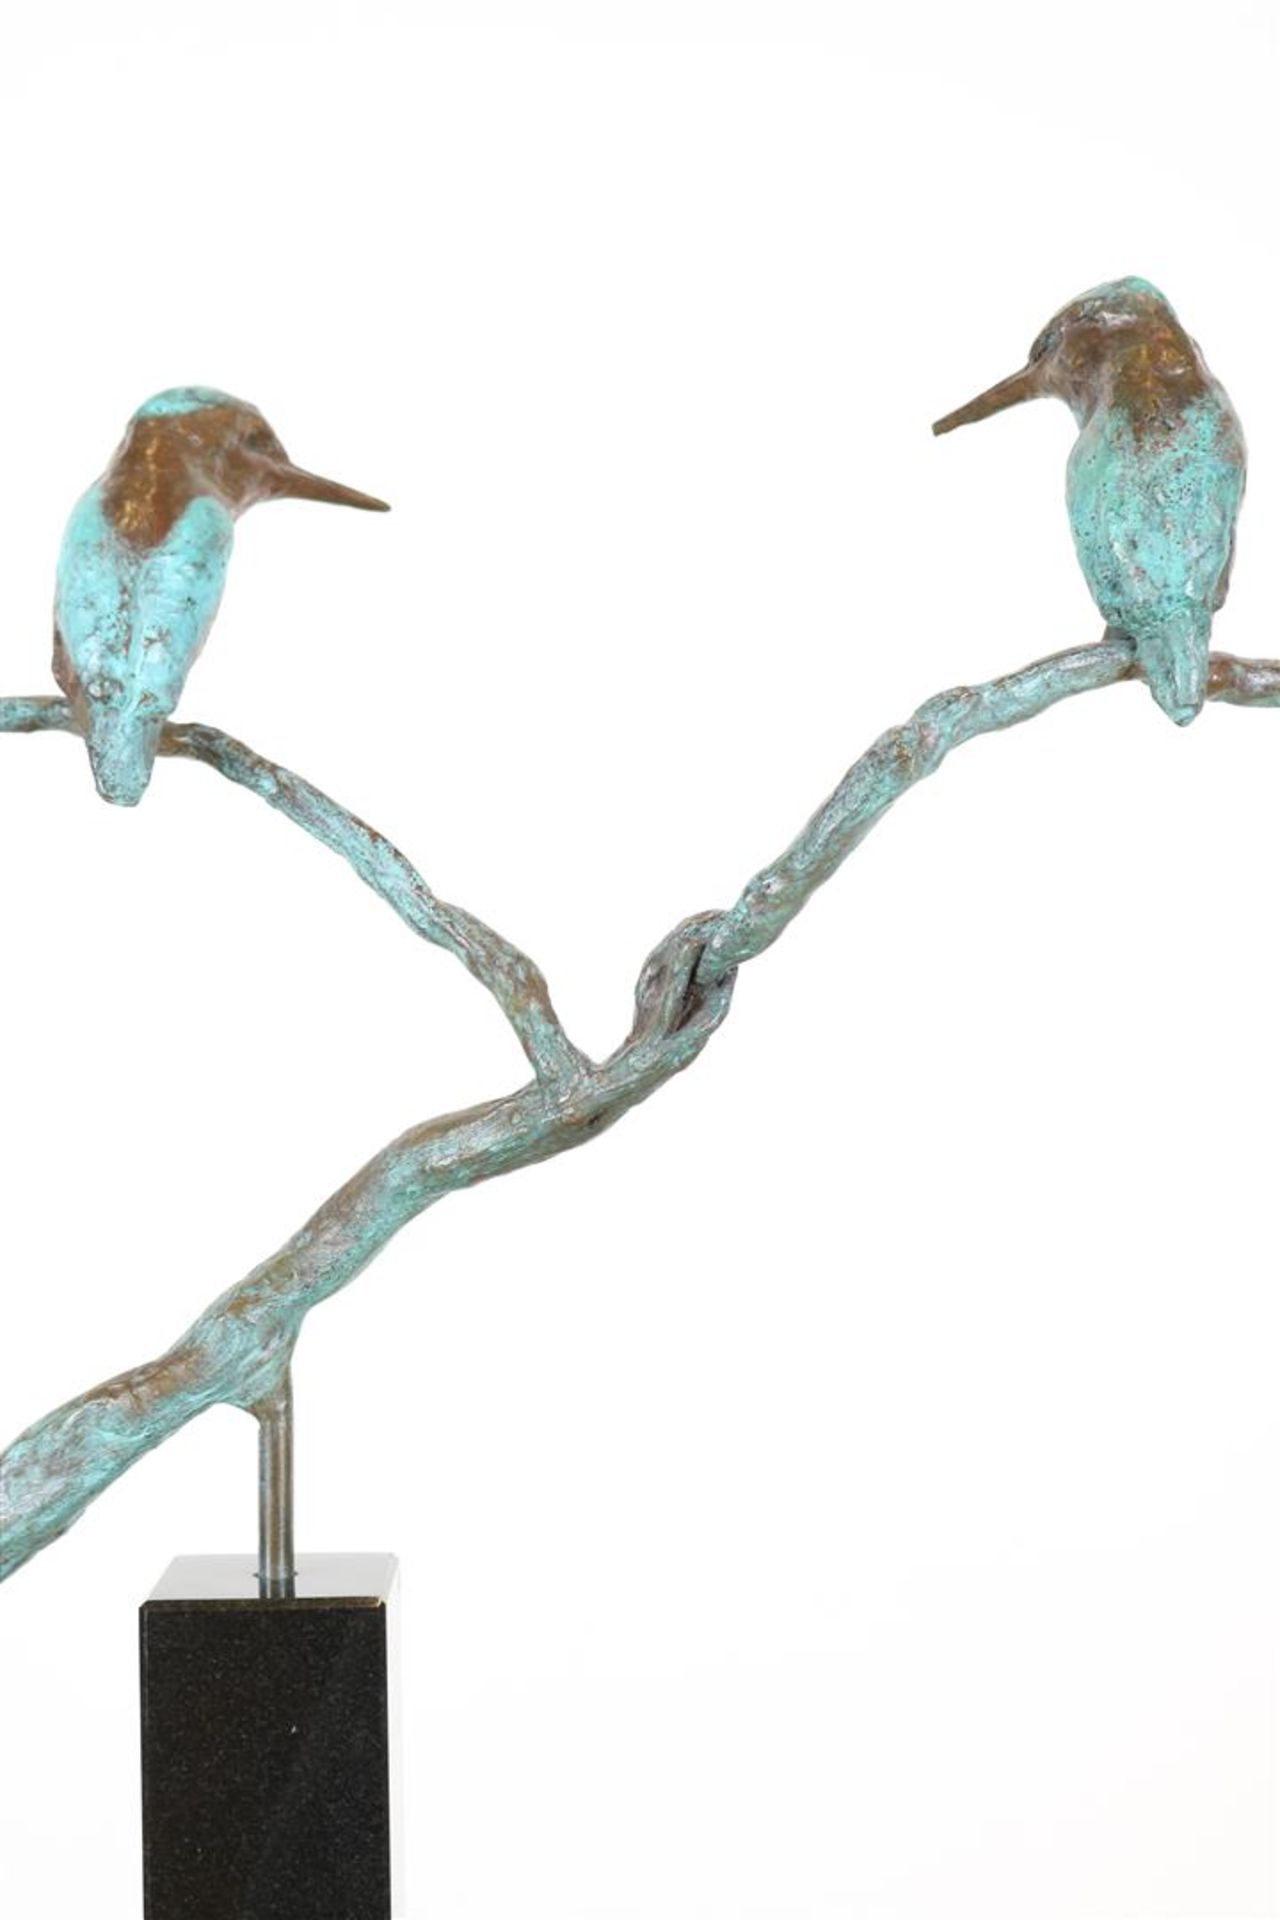 Bronze sculpture of 2 kingfishers sitting on a branch - Bild 4 aus 5